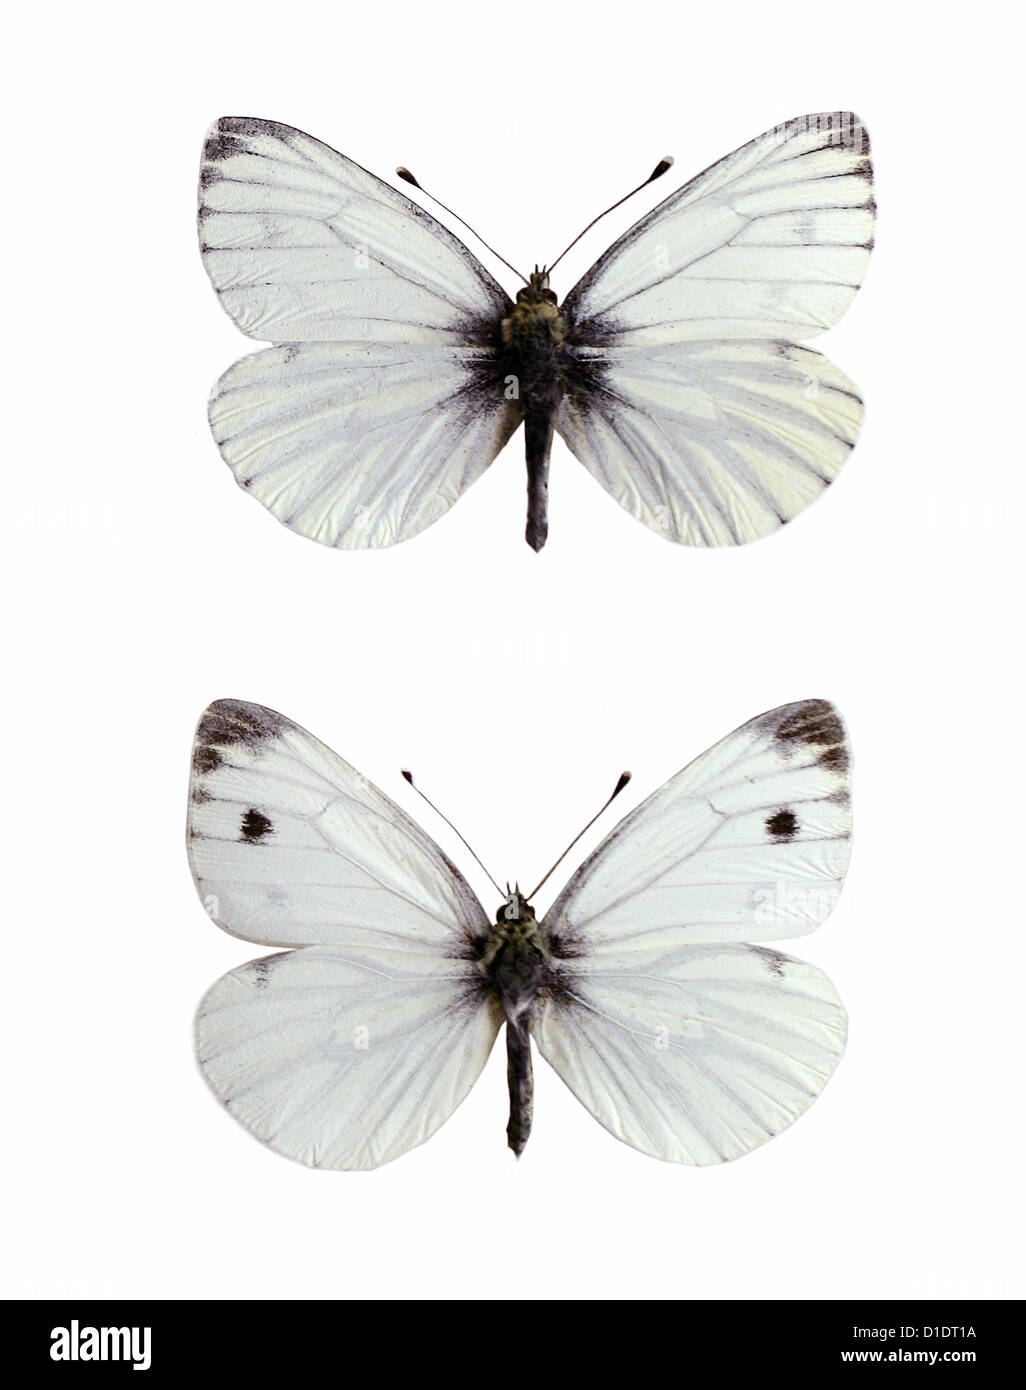 Grün-veined weiß Schmetterlinge, Pieris Napi, Pieridae, Lepidoptera. Montierte Exemplare. Foto/Ausschnitt. (oben) Männlich, (unten) weiblich Stockfoto